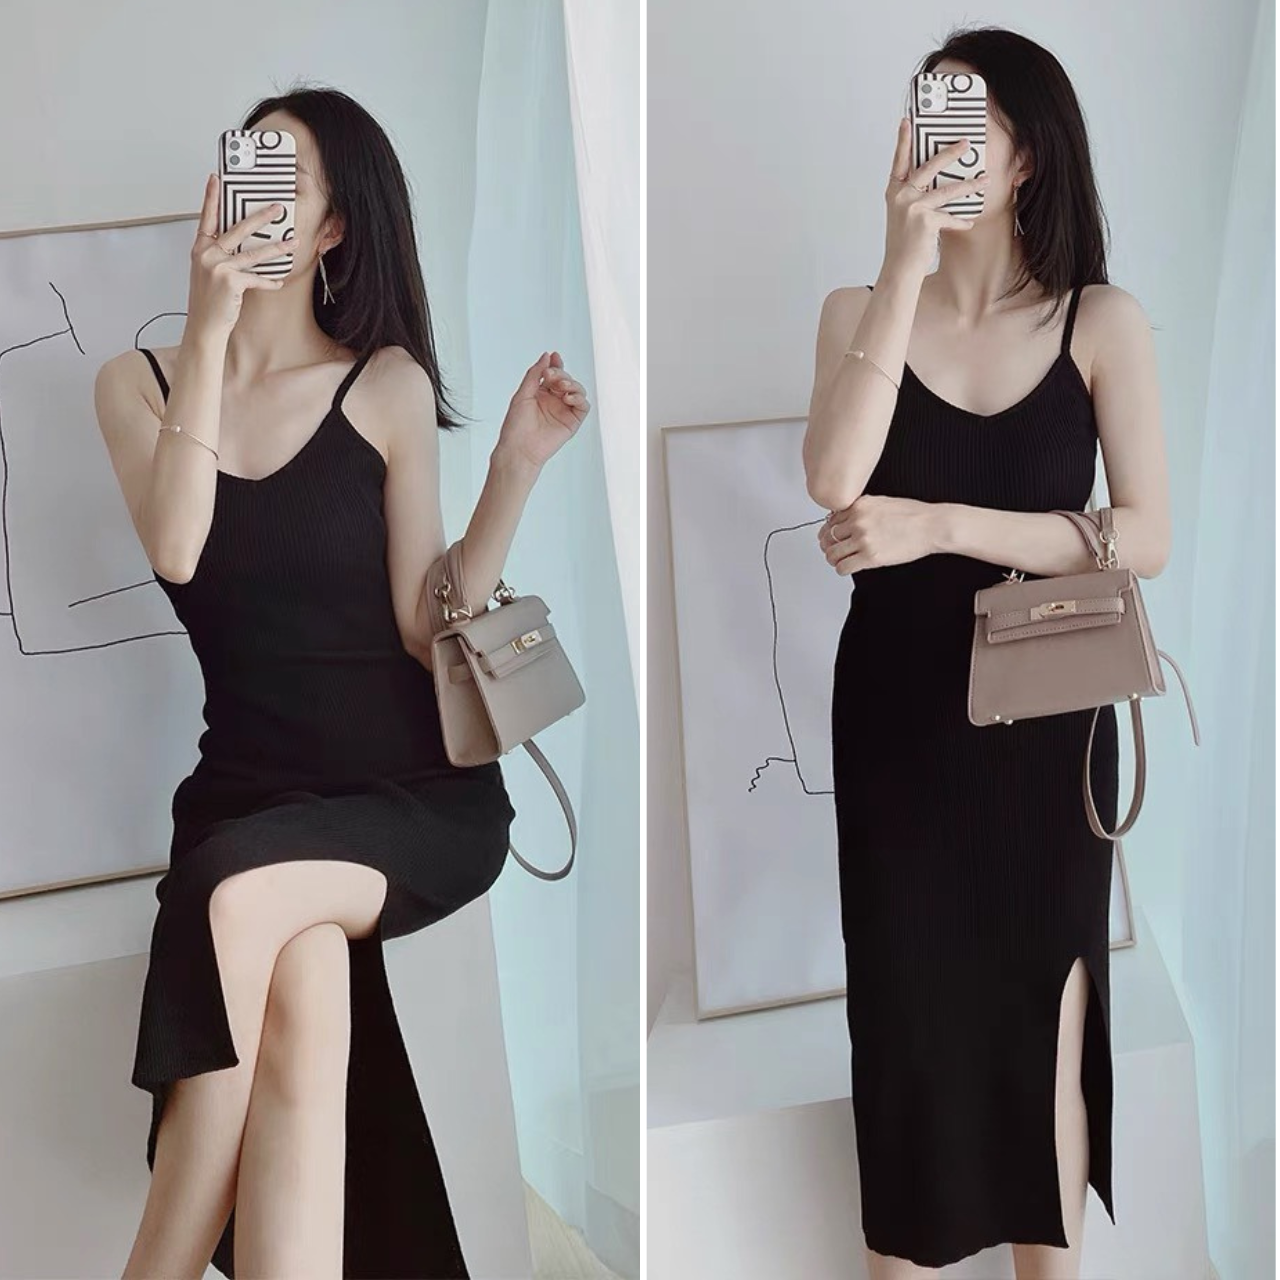 Đầm váy nữ body đen viền trắng xẻ tà Mới 100%, giá: 220.000đ, gọi:  0938202228, Huyện Bình Chánh - Hồ Chí Minh, id-abb81700